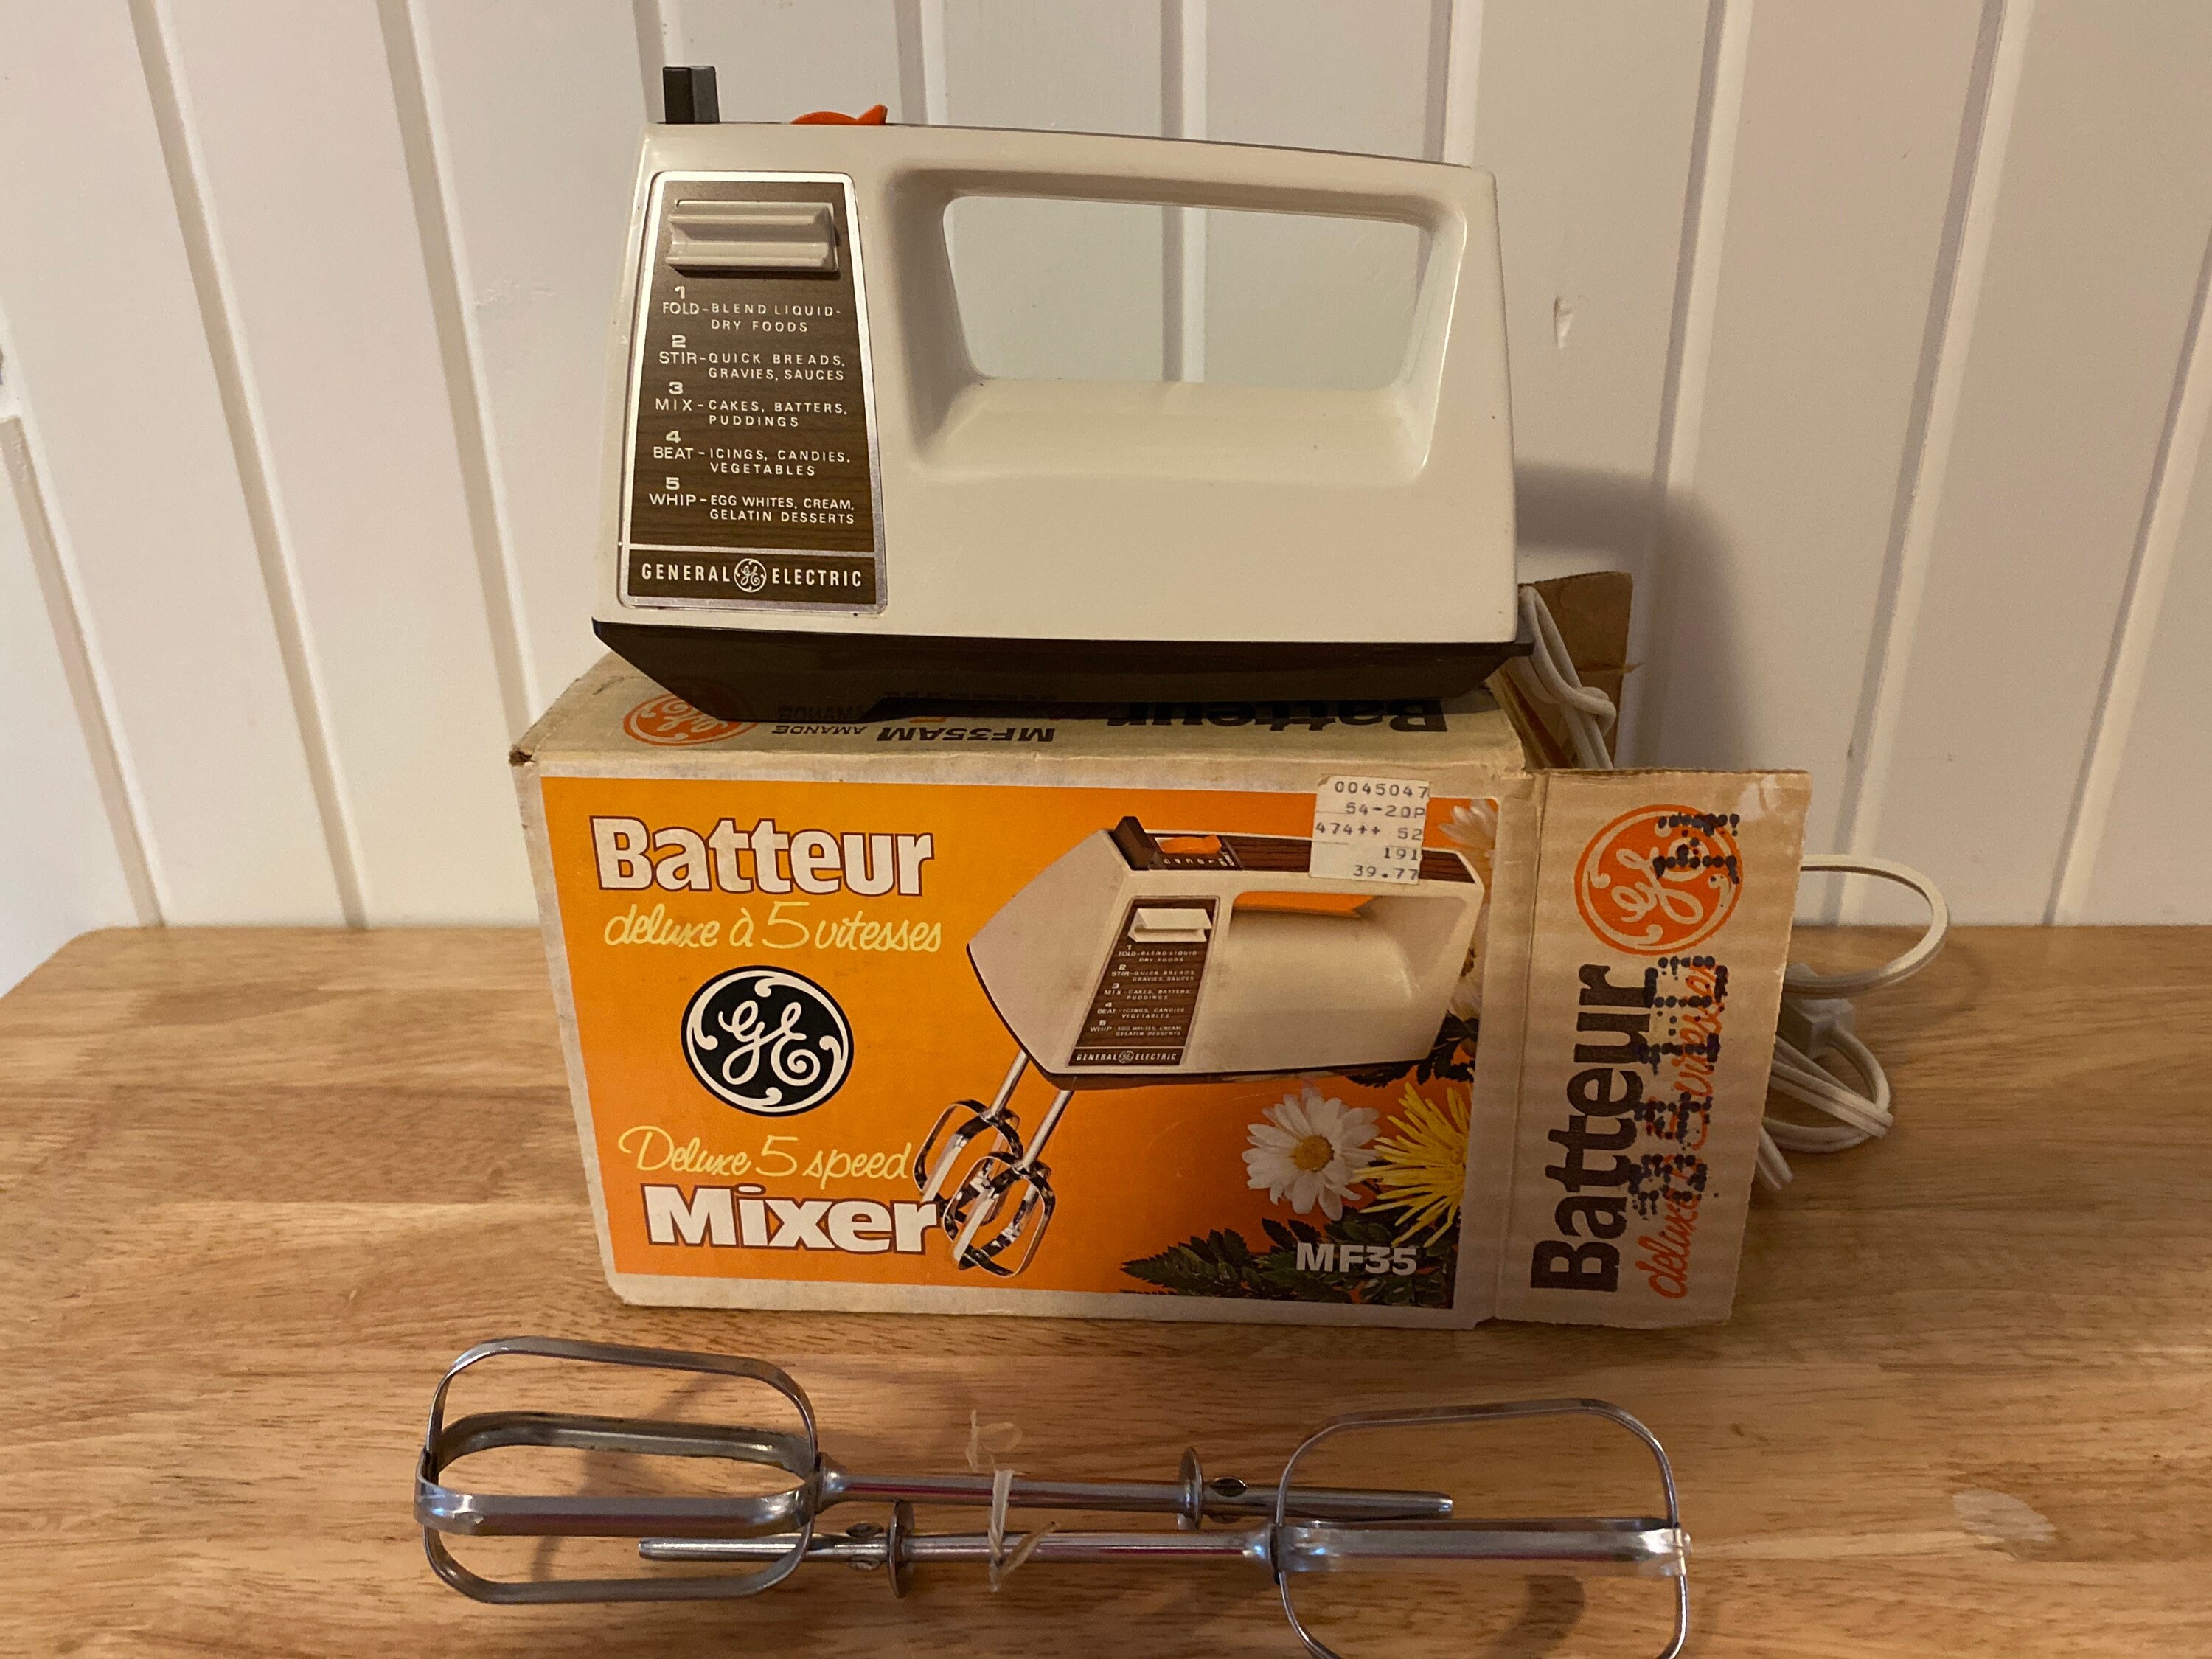 Vintage Appliance / Mixer / GE Super Deluxe Portable Mixer / Retro